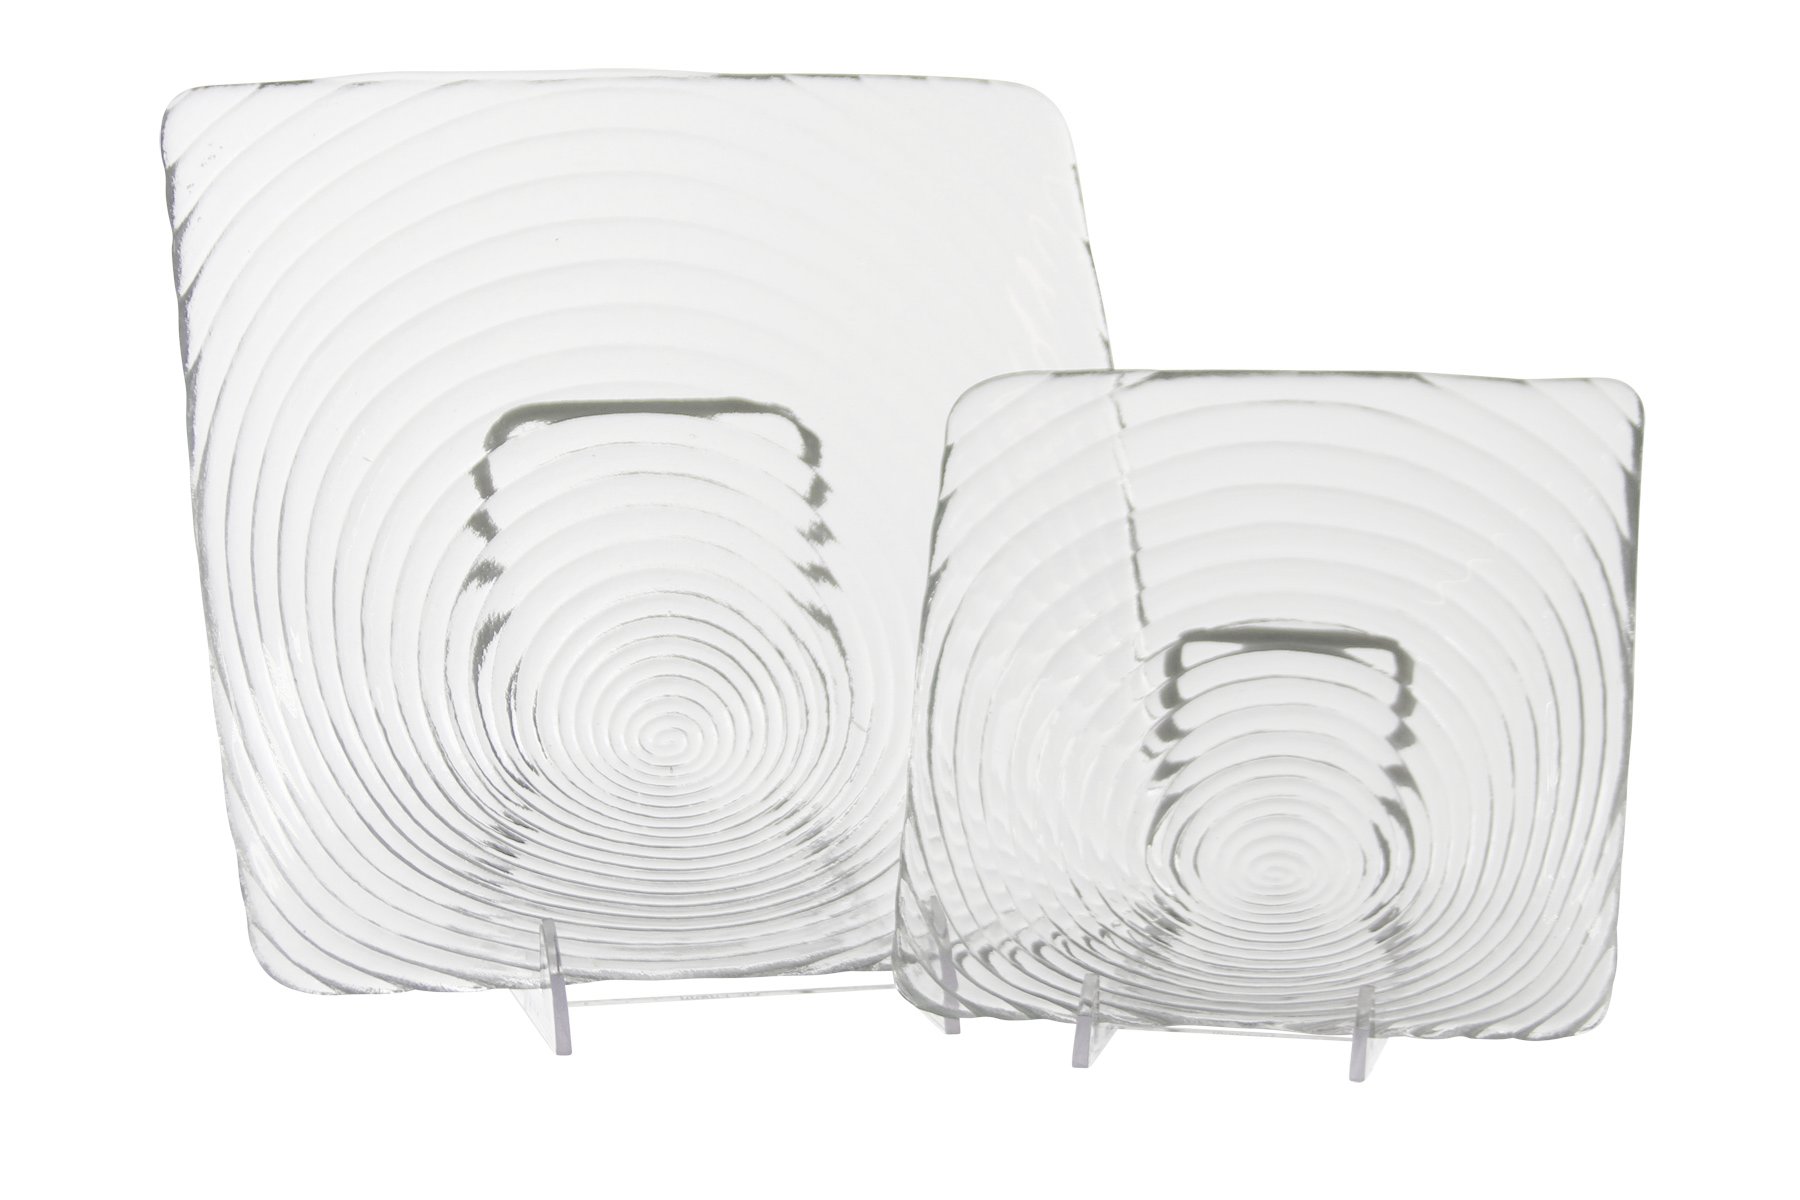 Apollo Clear Glass Square Plates